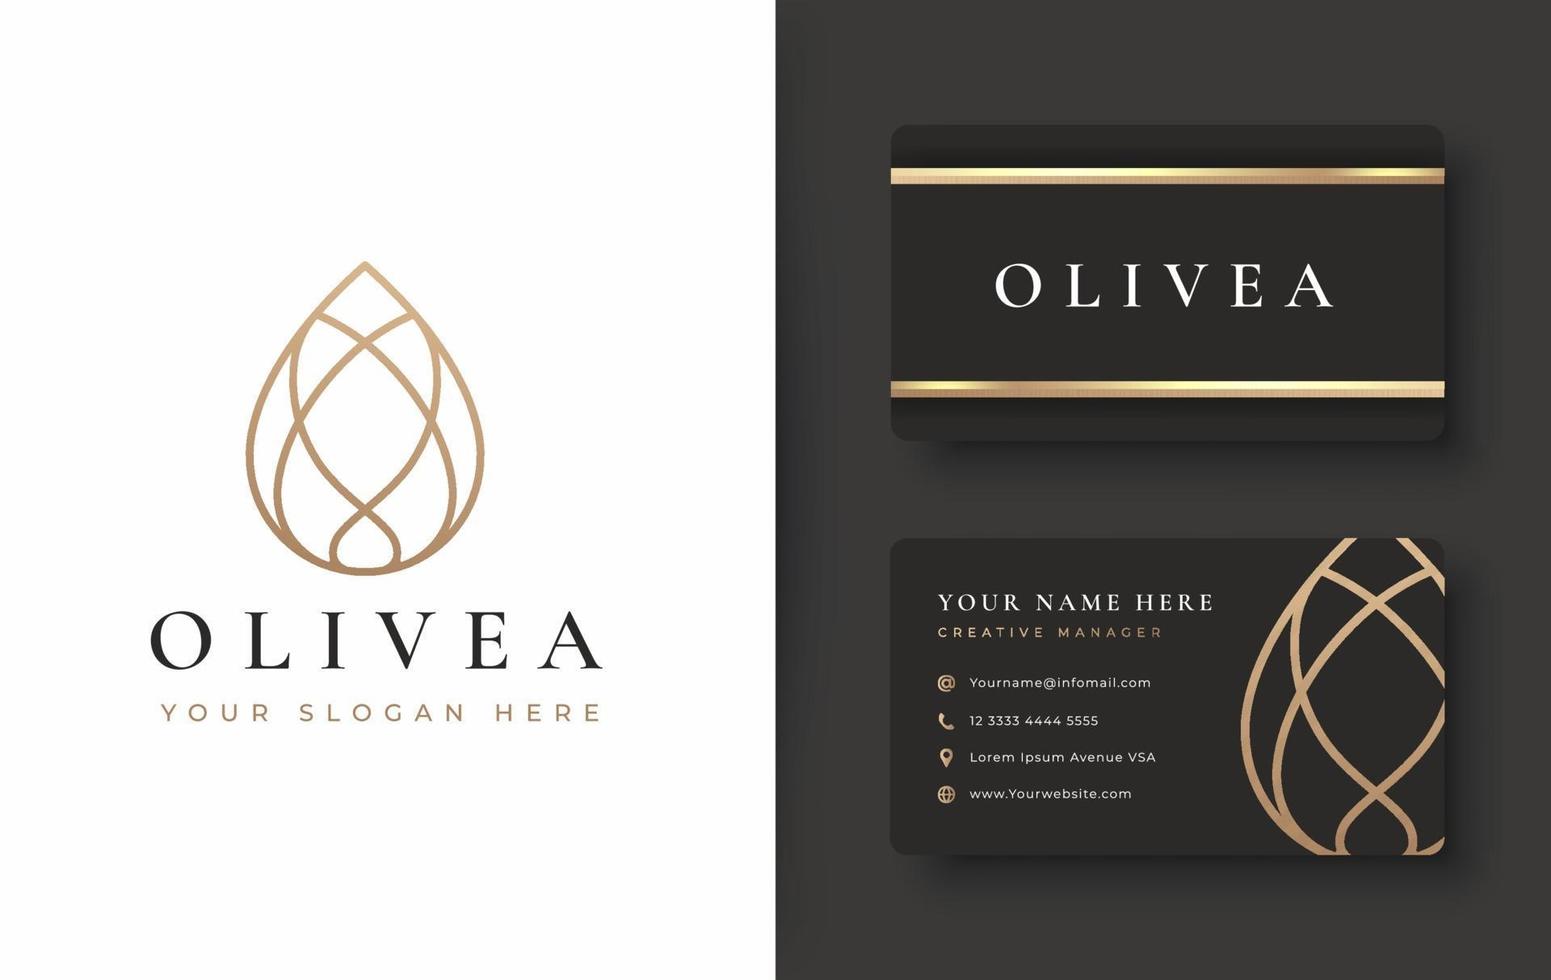 conception de logo et de carte de visite d'huile d'olive goutte d'eau vecteur